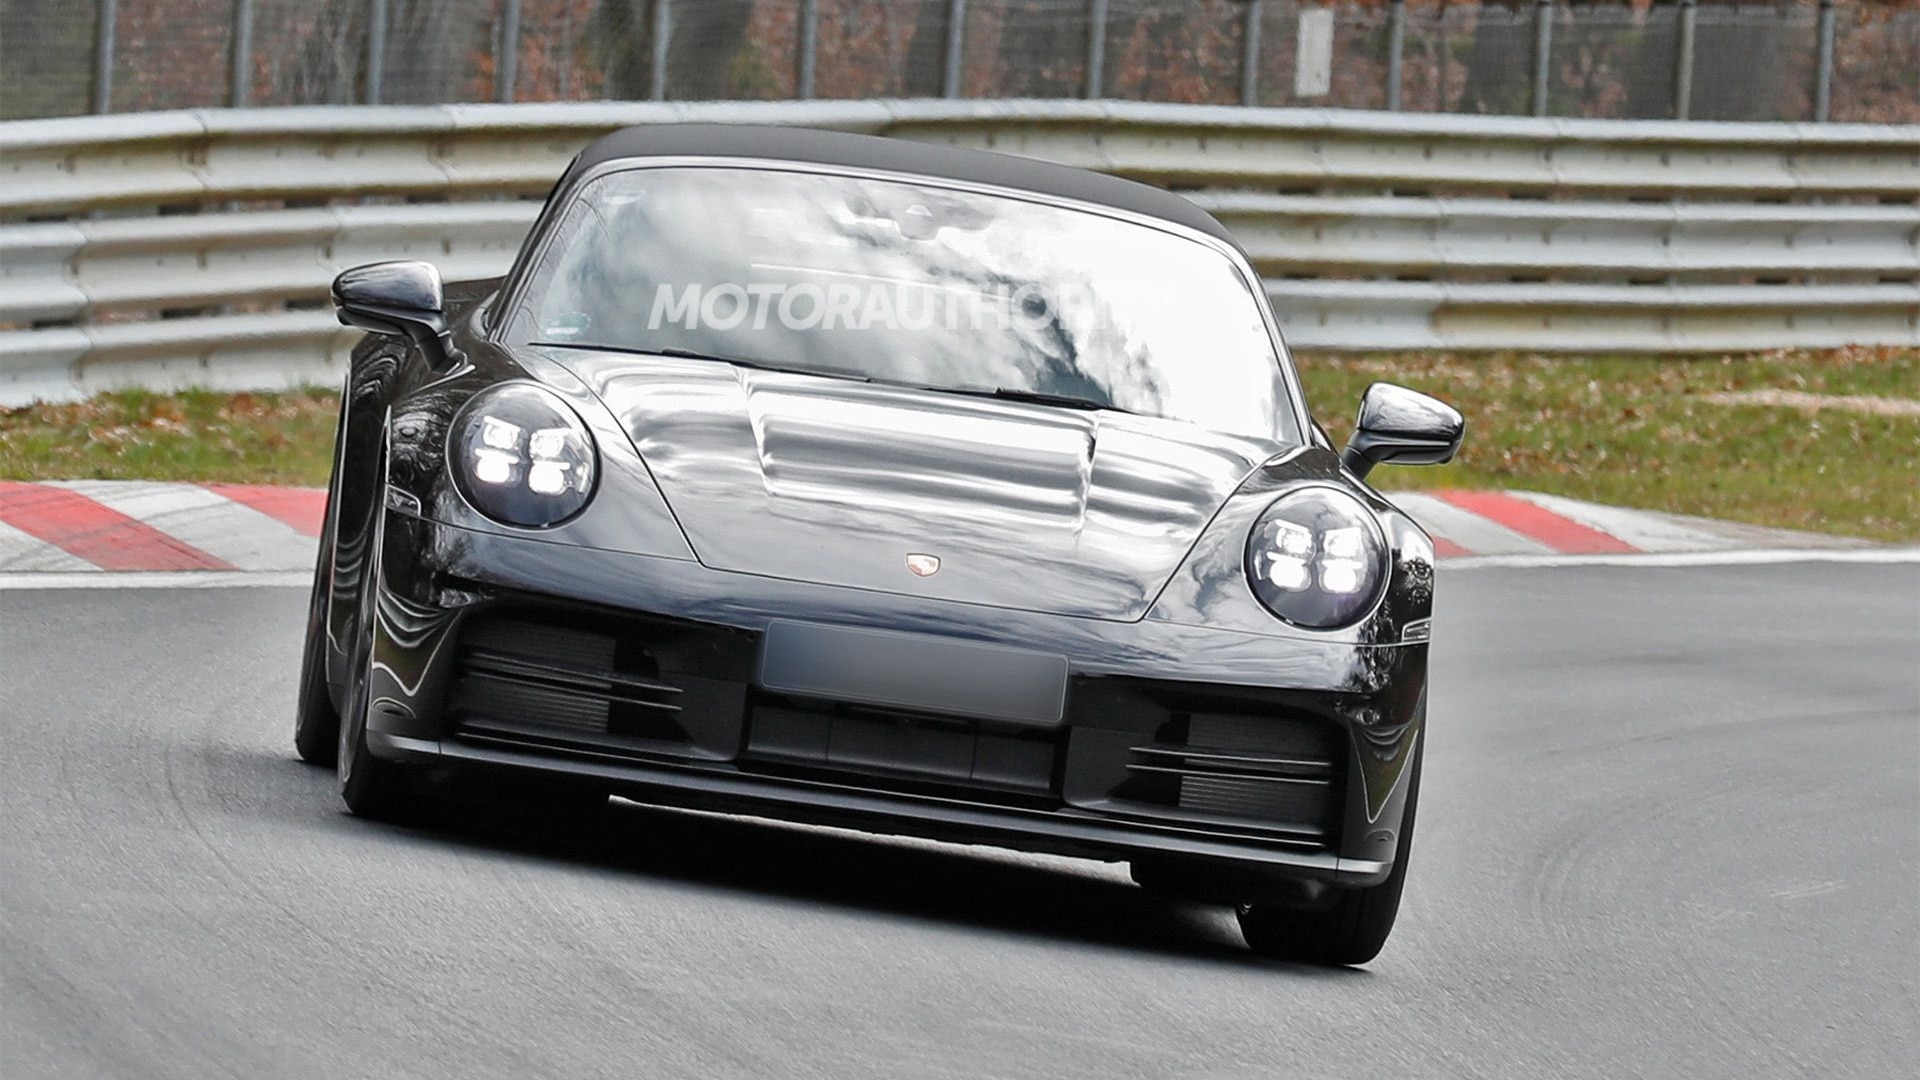 2025 Porsche 911 Carrera facelift spy shots - Photo credit: Baldauf